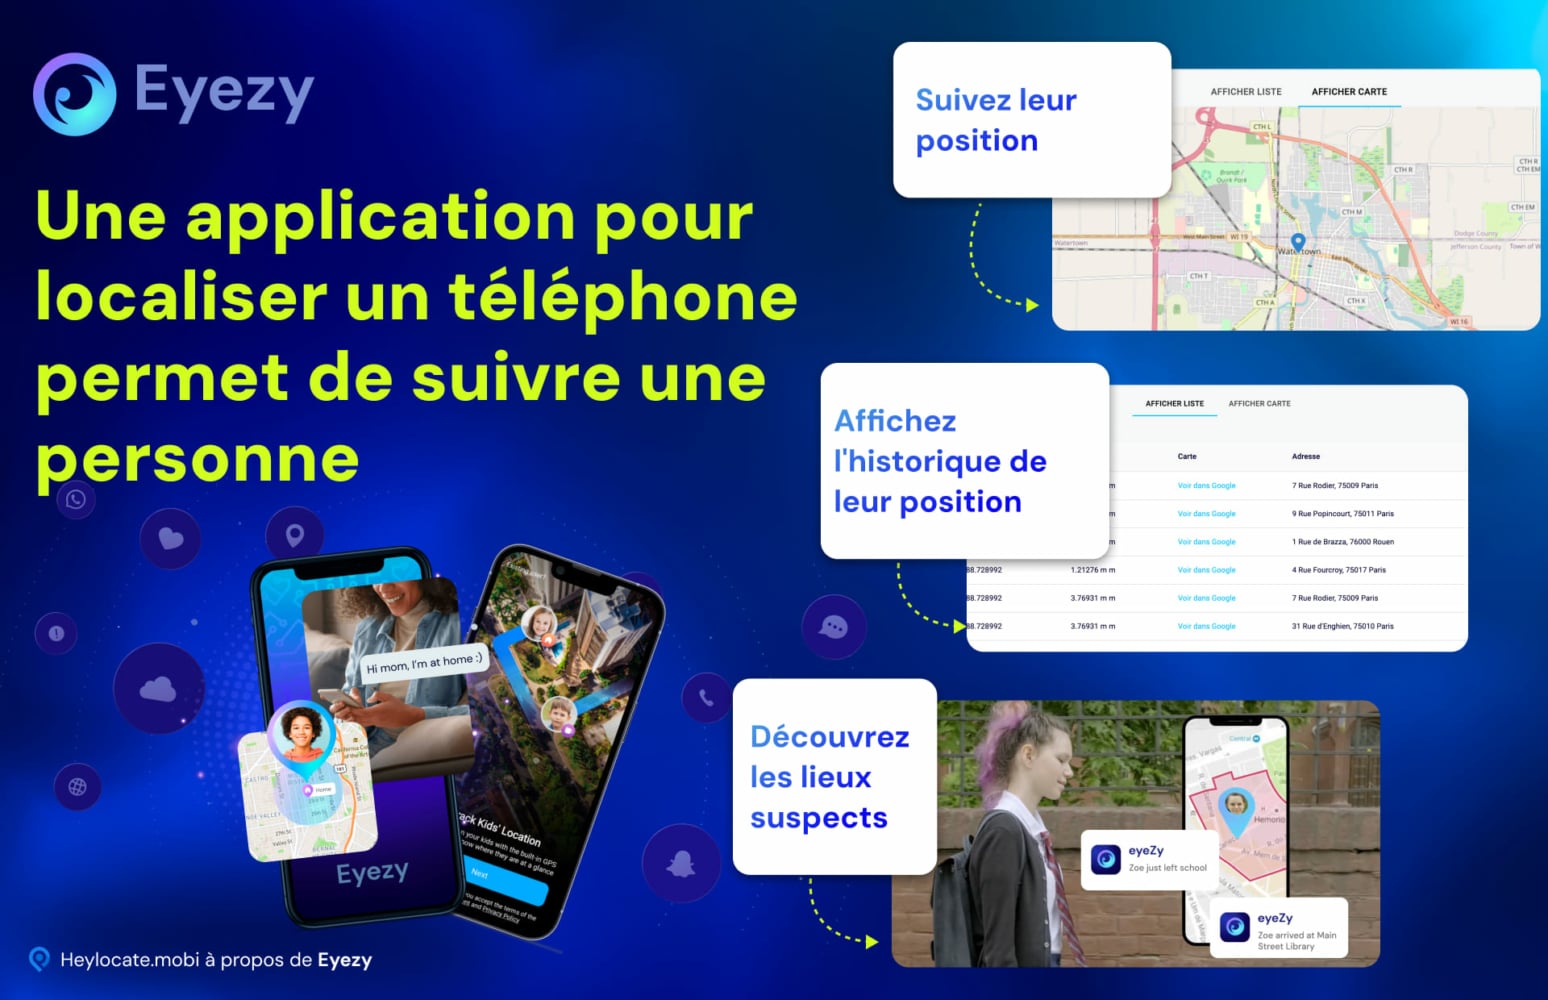 Eyezy fait une démonstration de la fonction de suivi de téléphone portable, avec des visuels de suivi de la localisation d'une personne, de visualisation de l'historique de la localisation et de découverte de lieux suspects sur une interface cartographique.